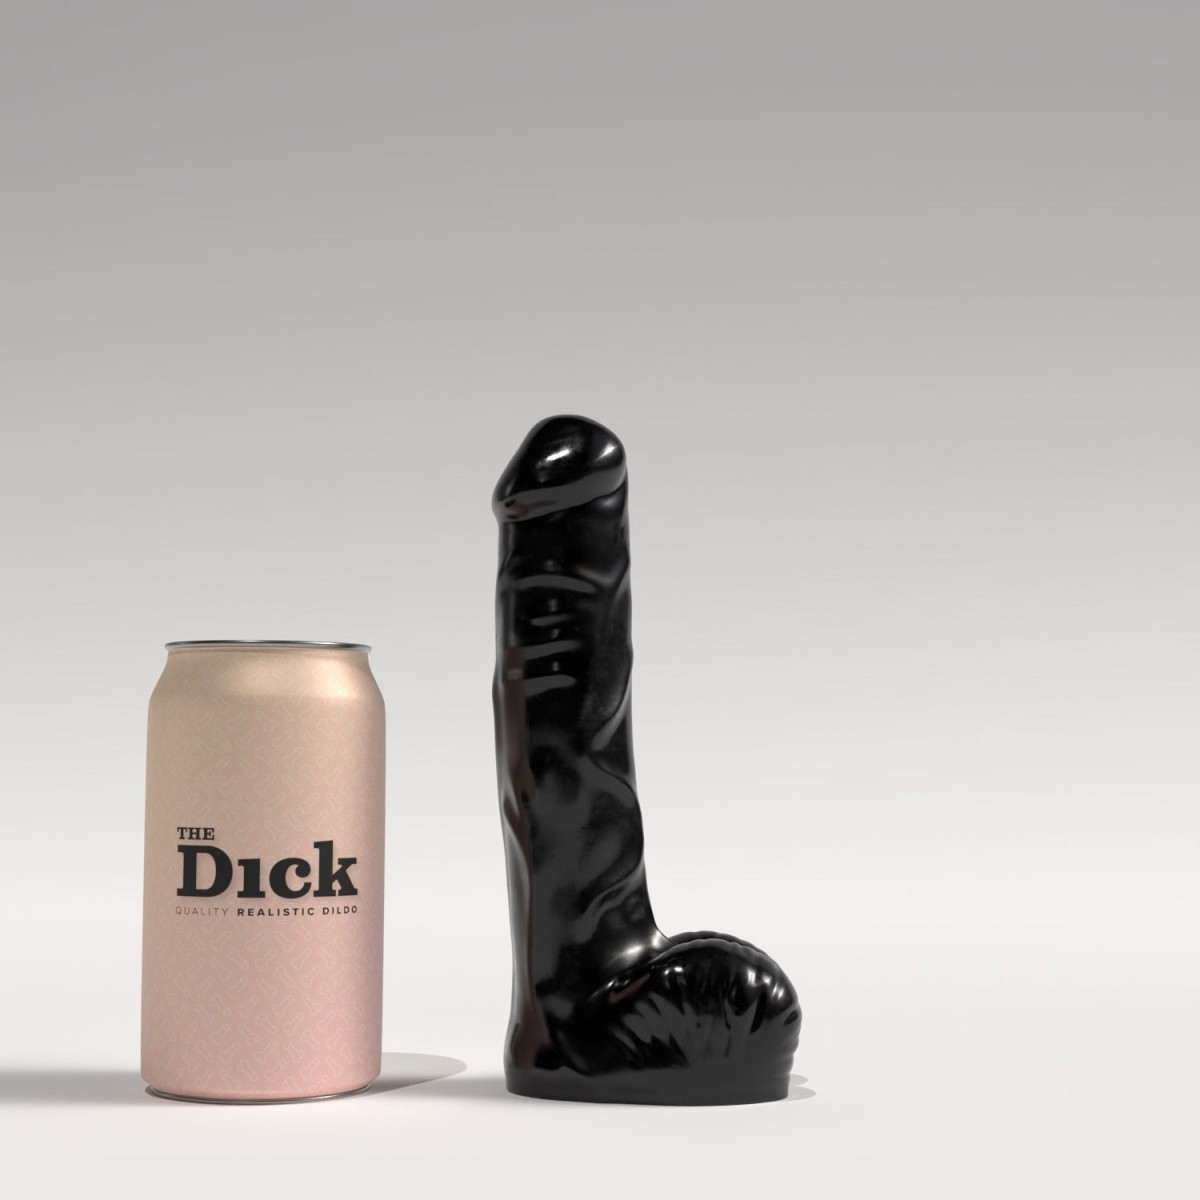 Dildo The Dick TD02 Richard černé, realistické dildo 18,5 x 4 cm